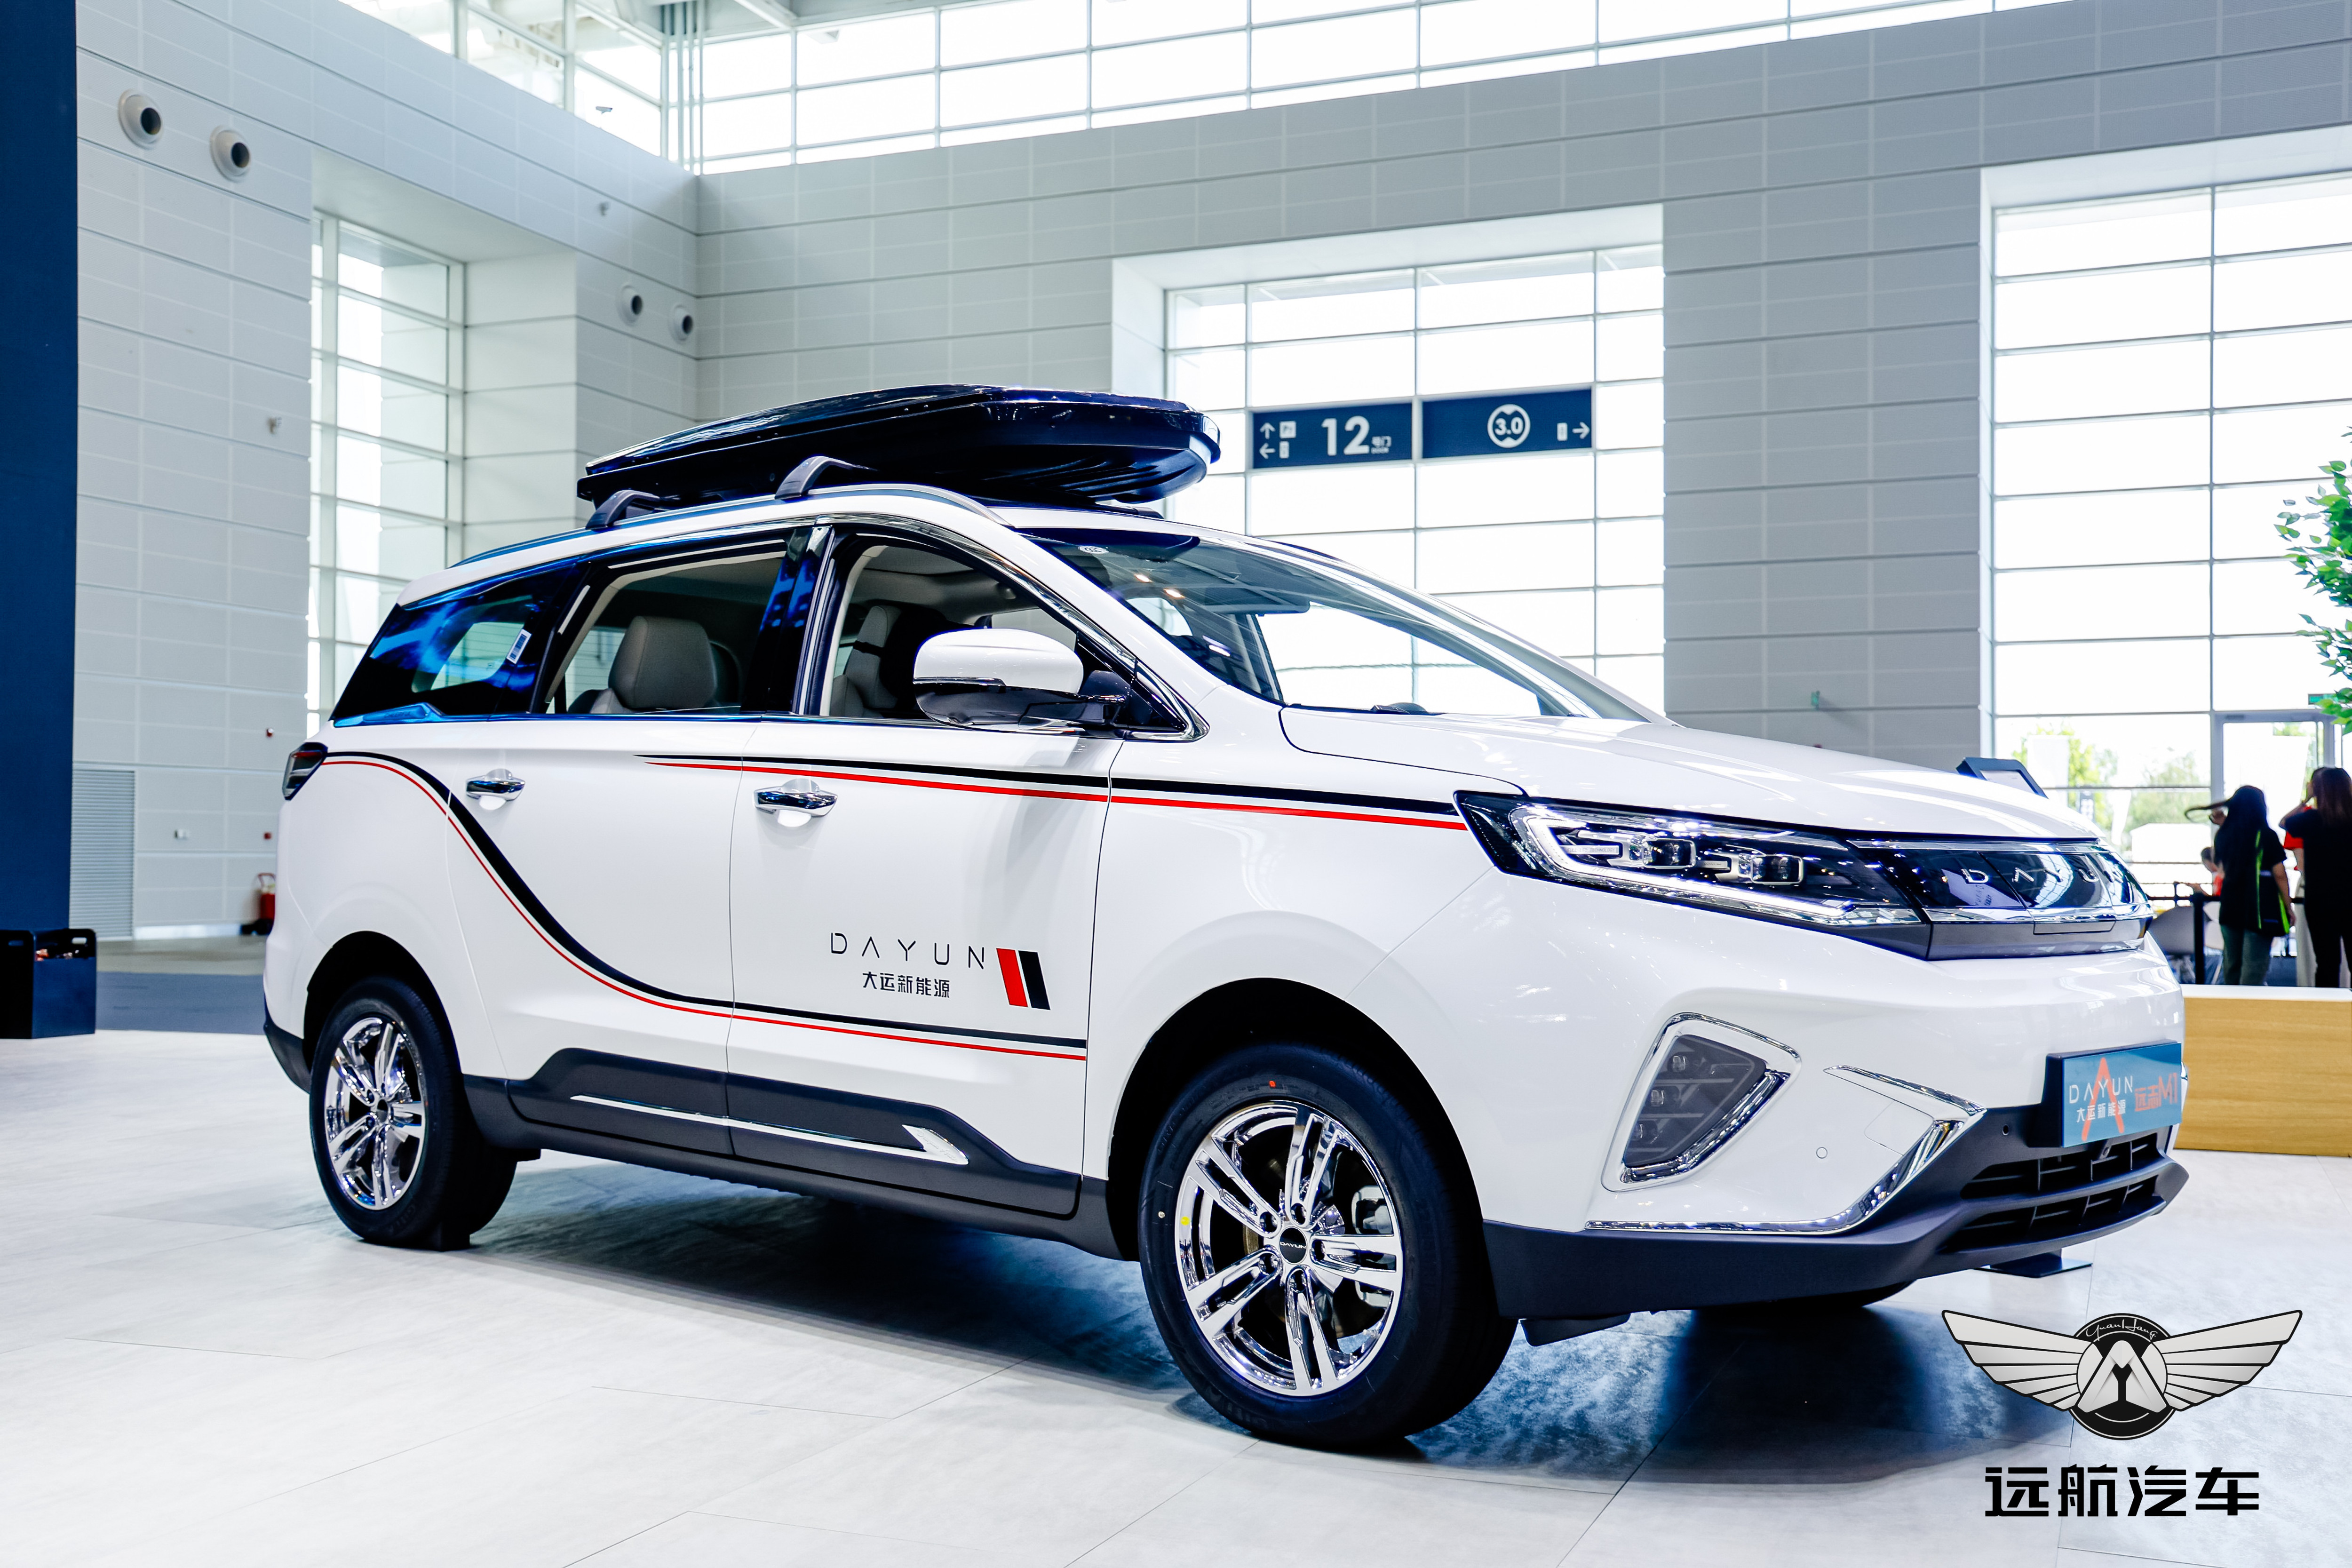 天津车展 | 大运新能源深度诠释品牌魅力 为都市人群打造理想车型